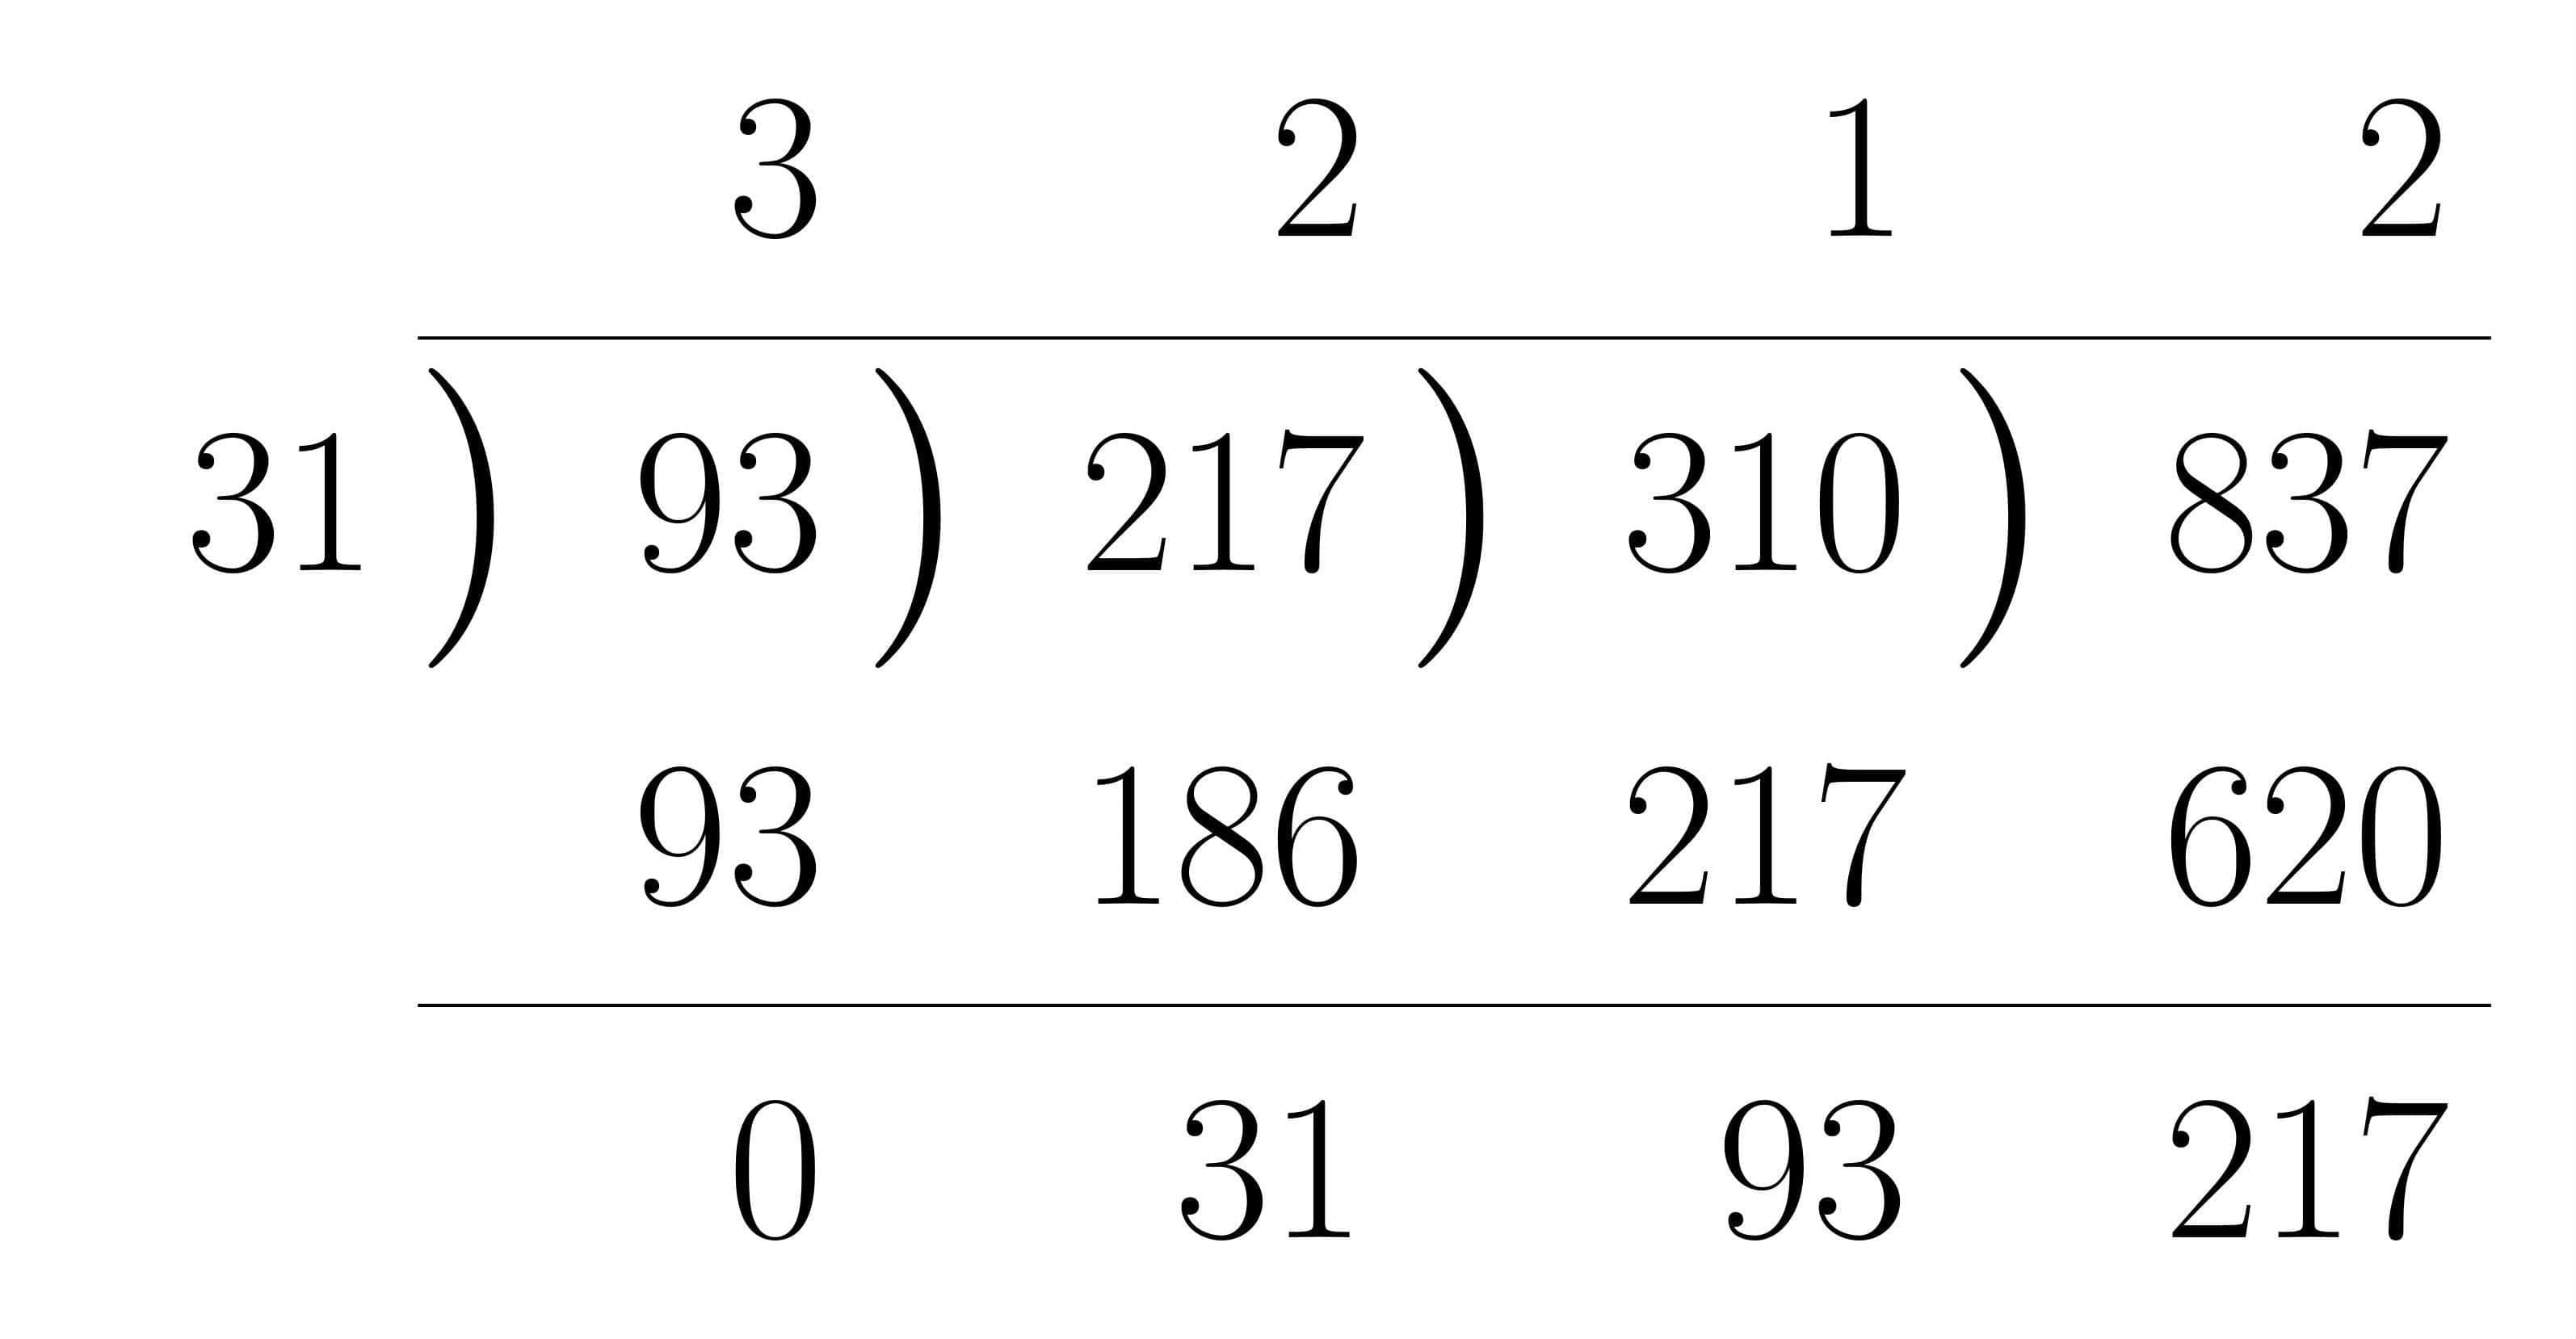 ユークリッドの互除法による最大公約数の求め方の計算法練習1